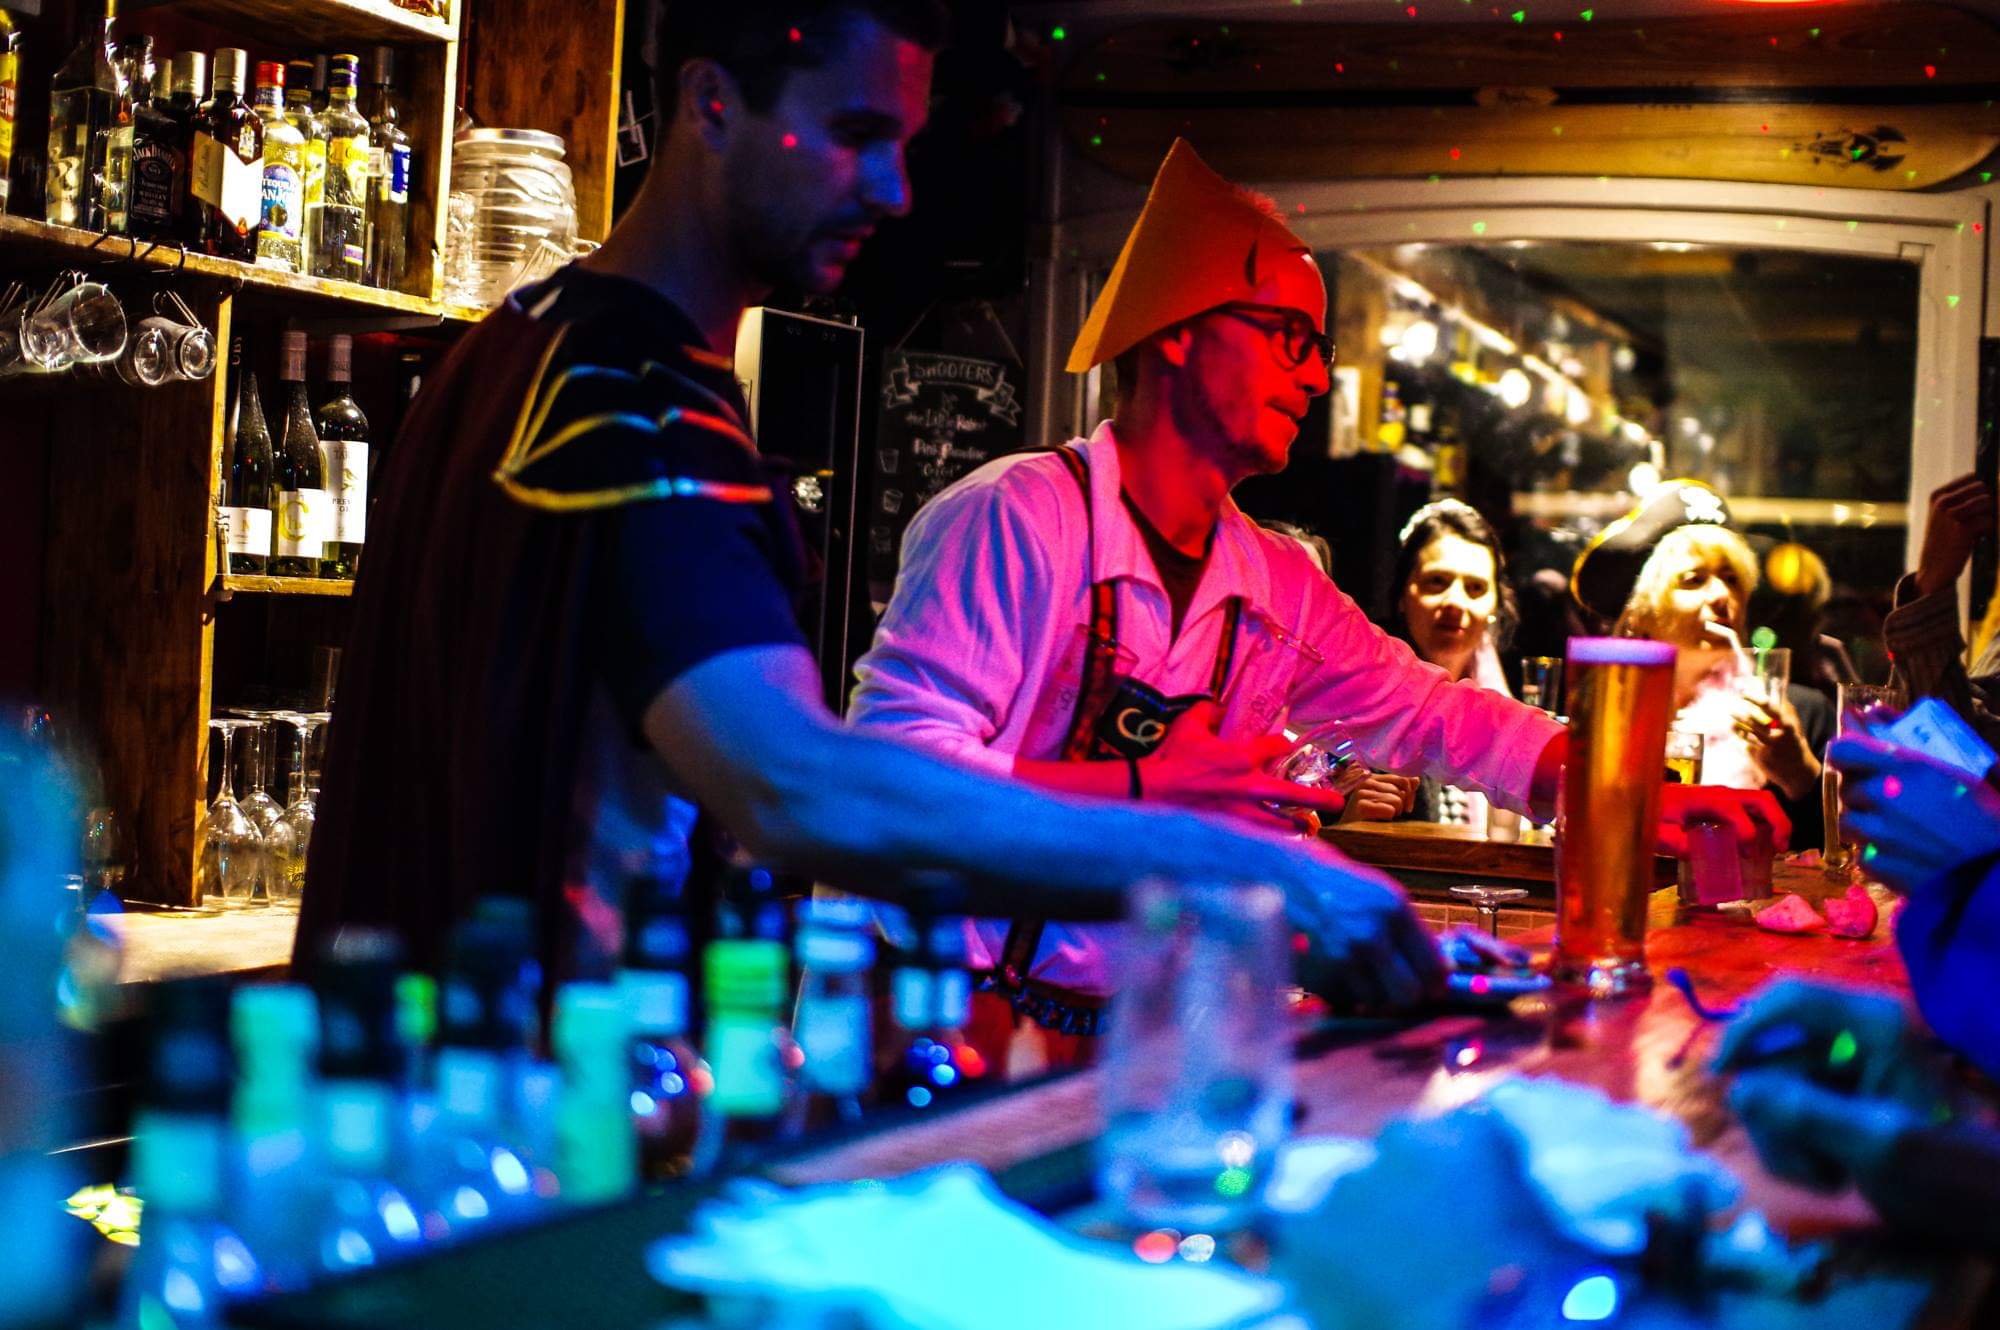 L’Alpen Bar a 40 ans et fête l’ouverture du domaine de Serre-Chevalier